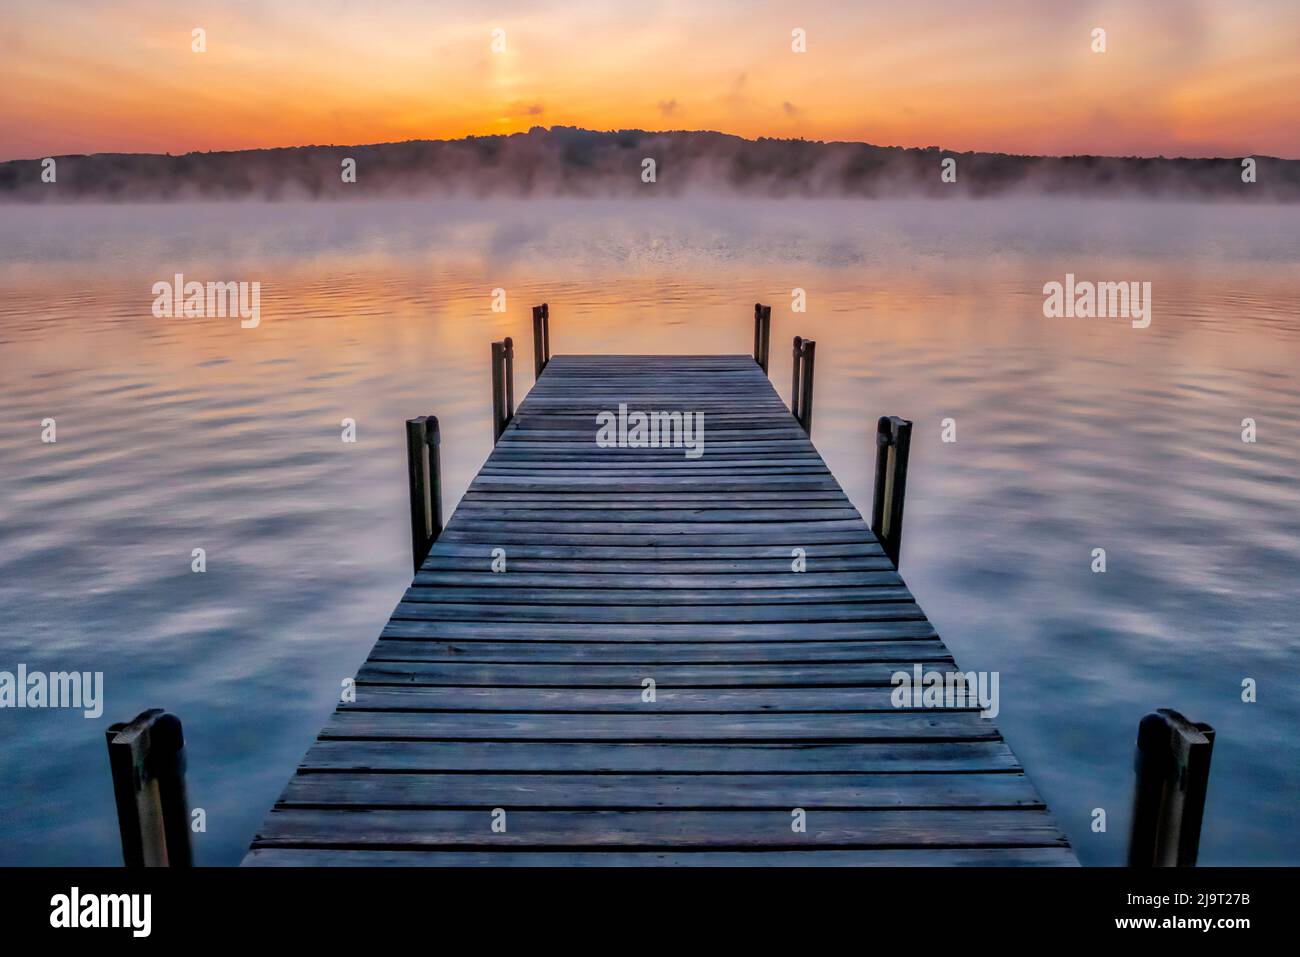 Dock on Long Lake at sunrise, Bridgton, Maine Stock Photo